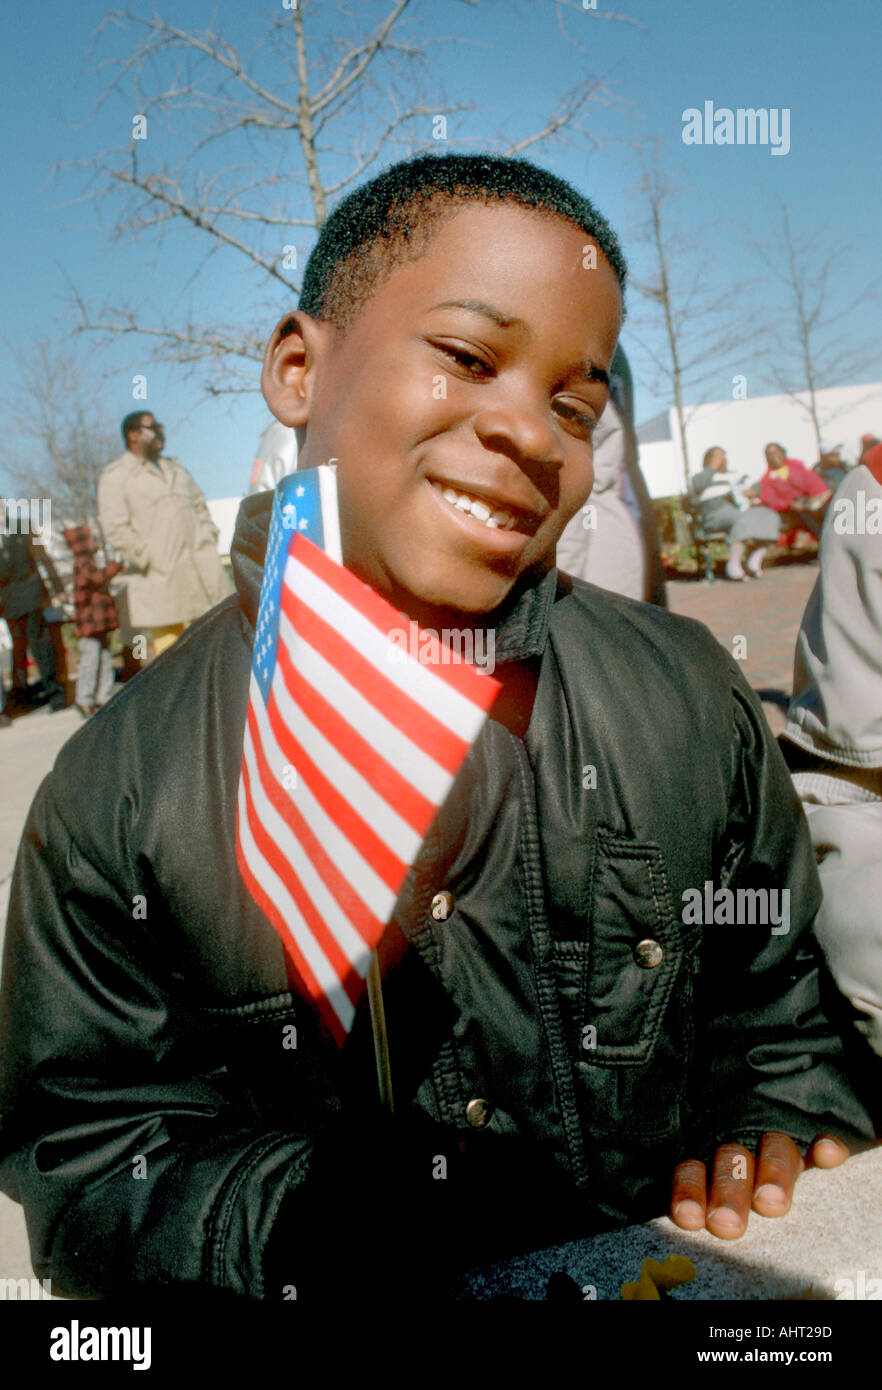 Black 10 ans homme garçon tenant un petit drapeau Américain Banque D'Images